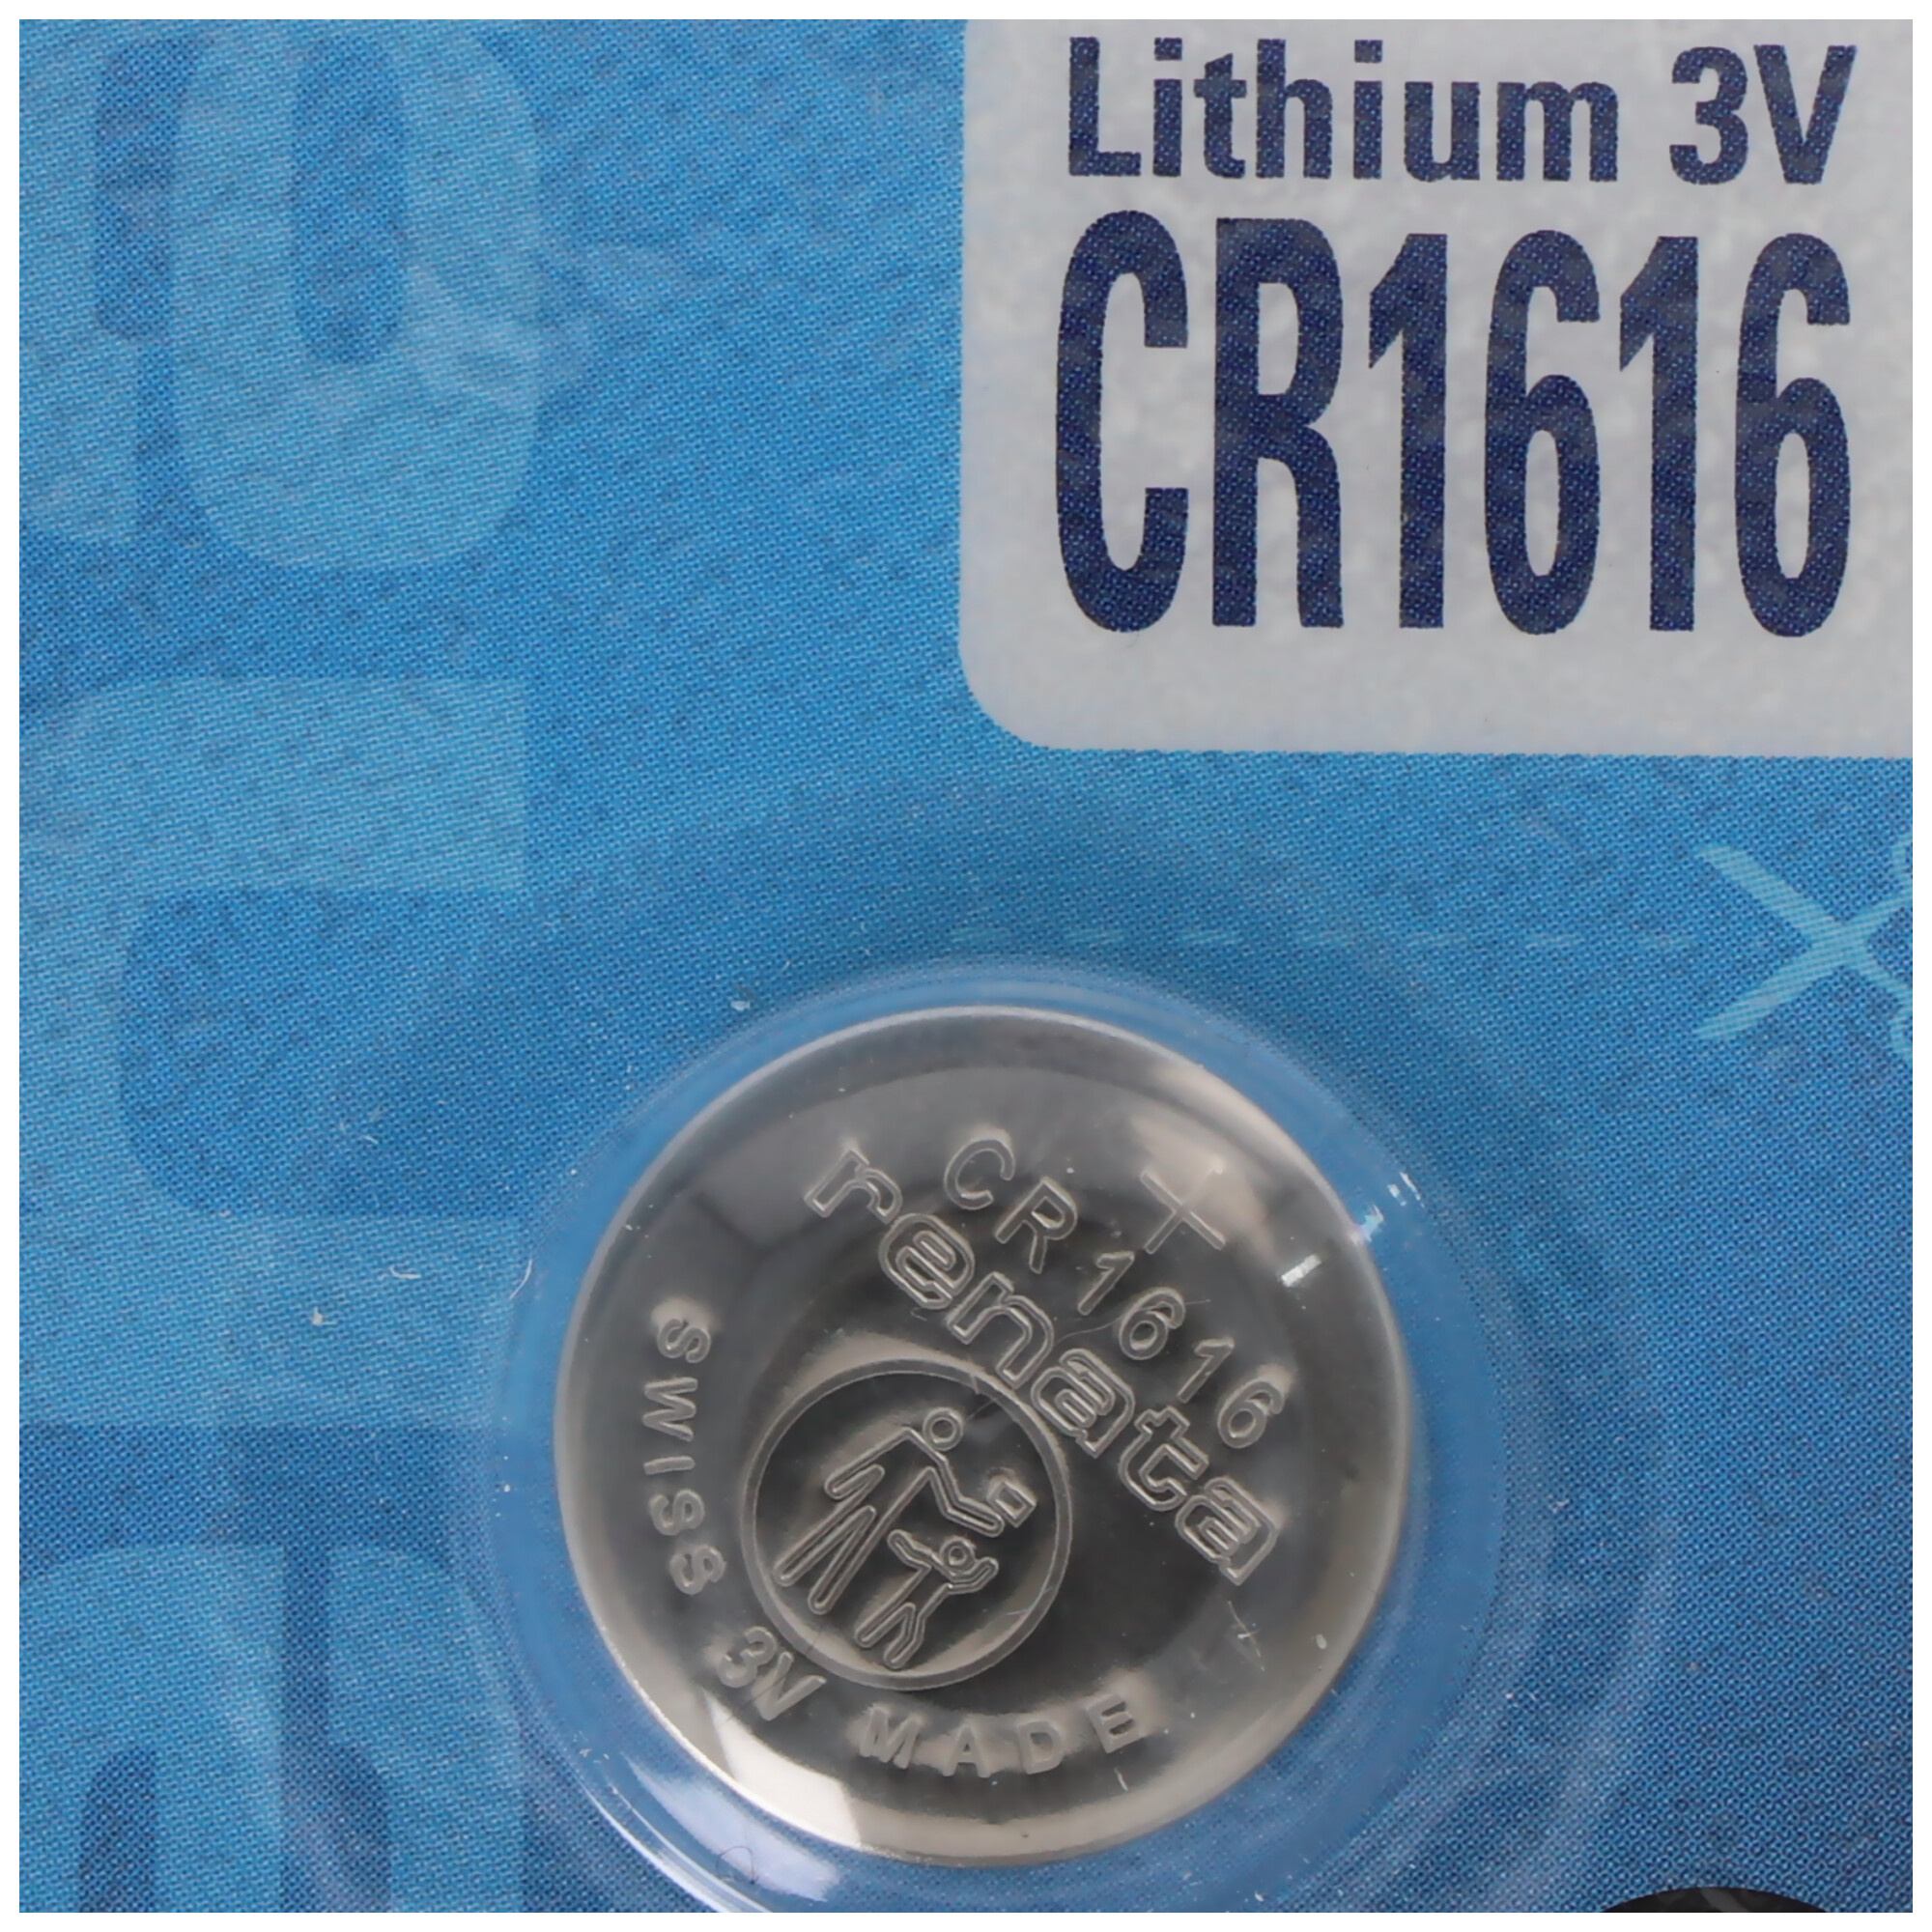 CR1616 Lithium Batterie IEC CR1616 mit 3 Volt und 55mAh